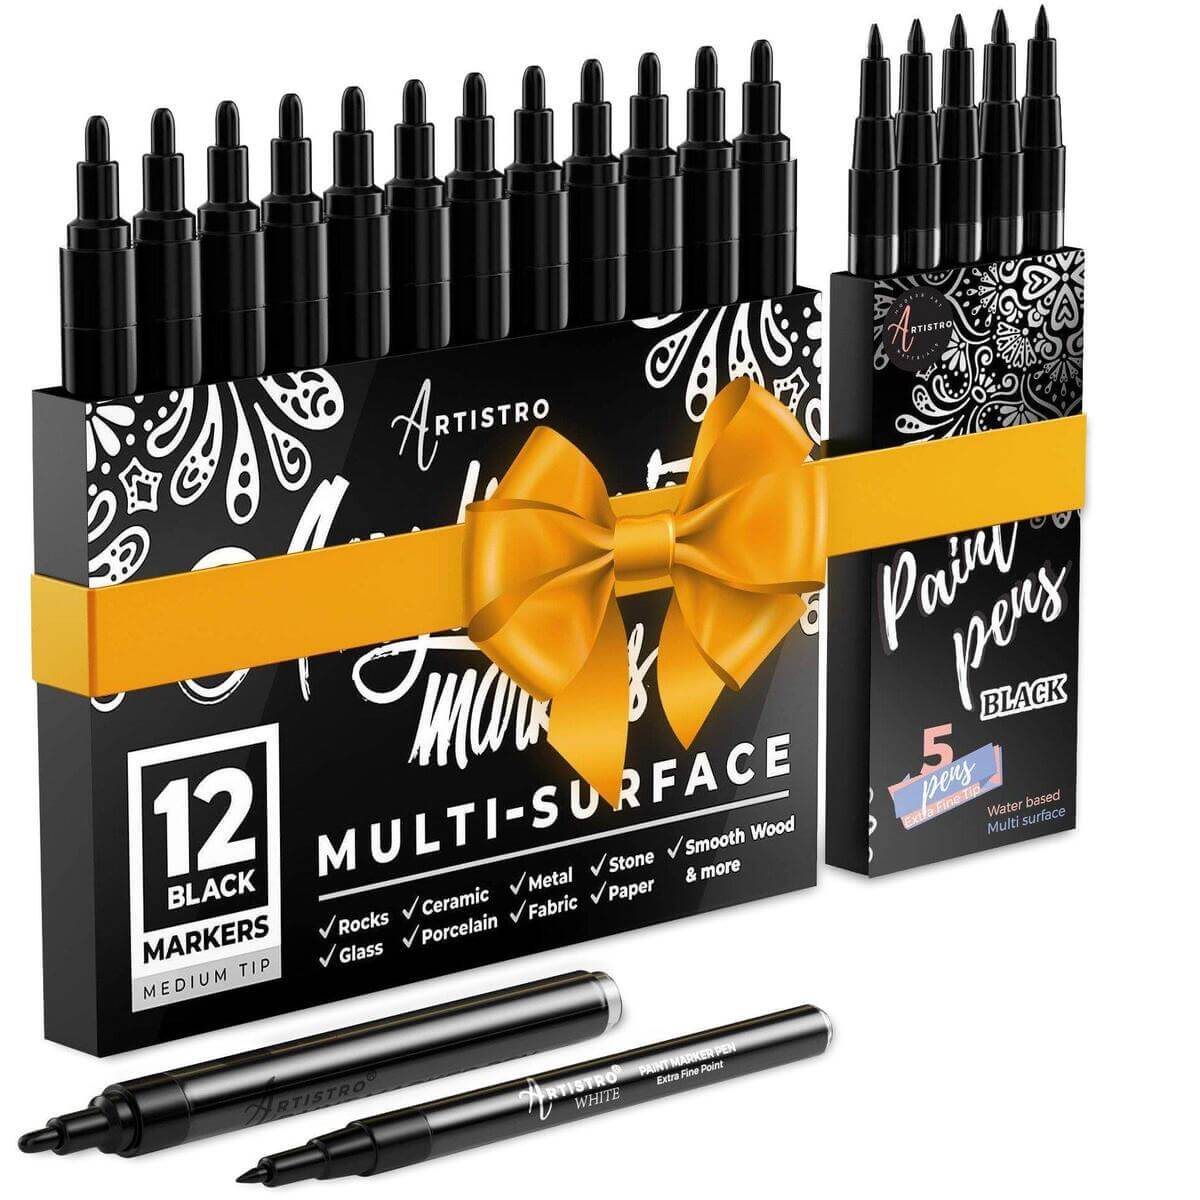 https://artistro.com/cdn/shop/products/17-black-acrylic-paint-pens-bundle-5-extra-fine-tip-black-paint-markers-12-medium-tip-black-paint-markers-753530_1200x.jpg?v=1639151383